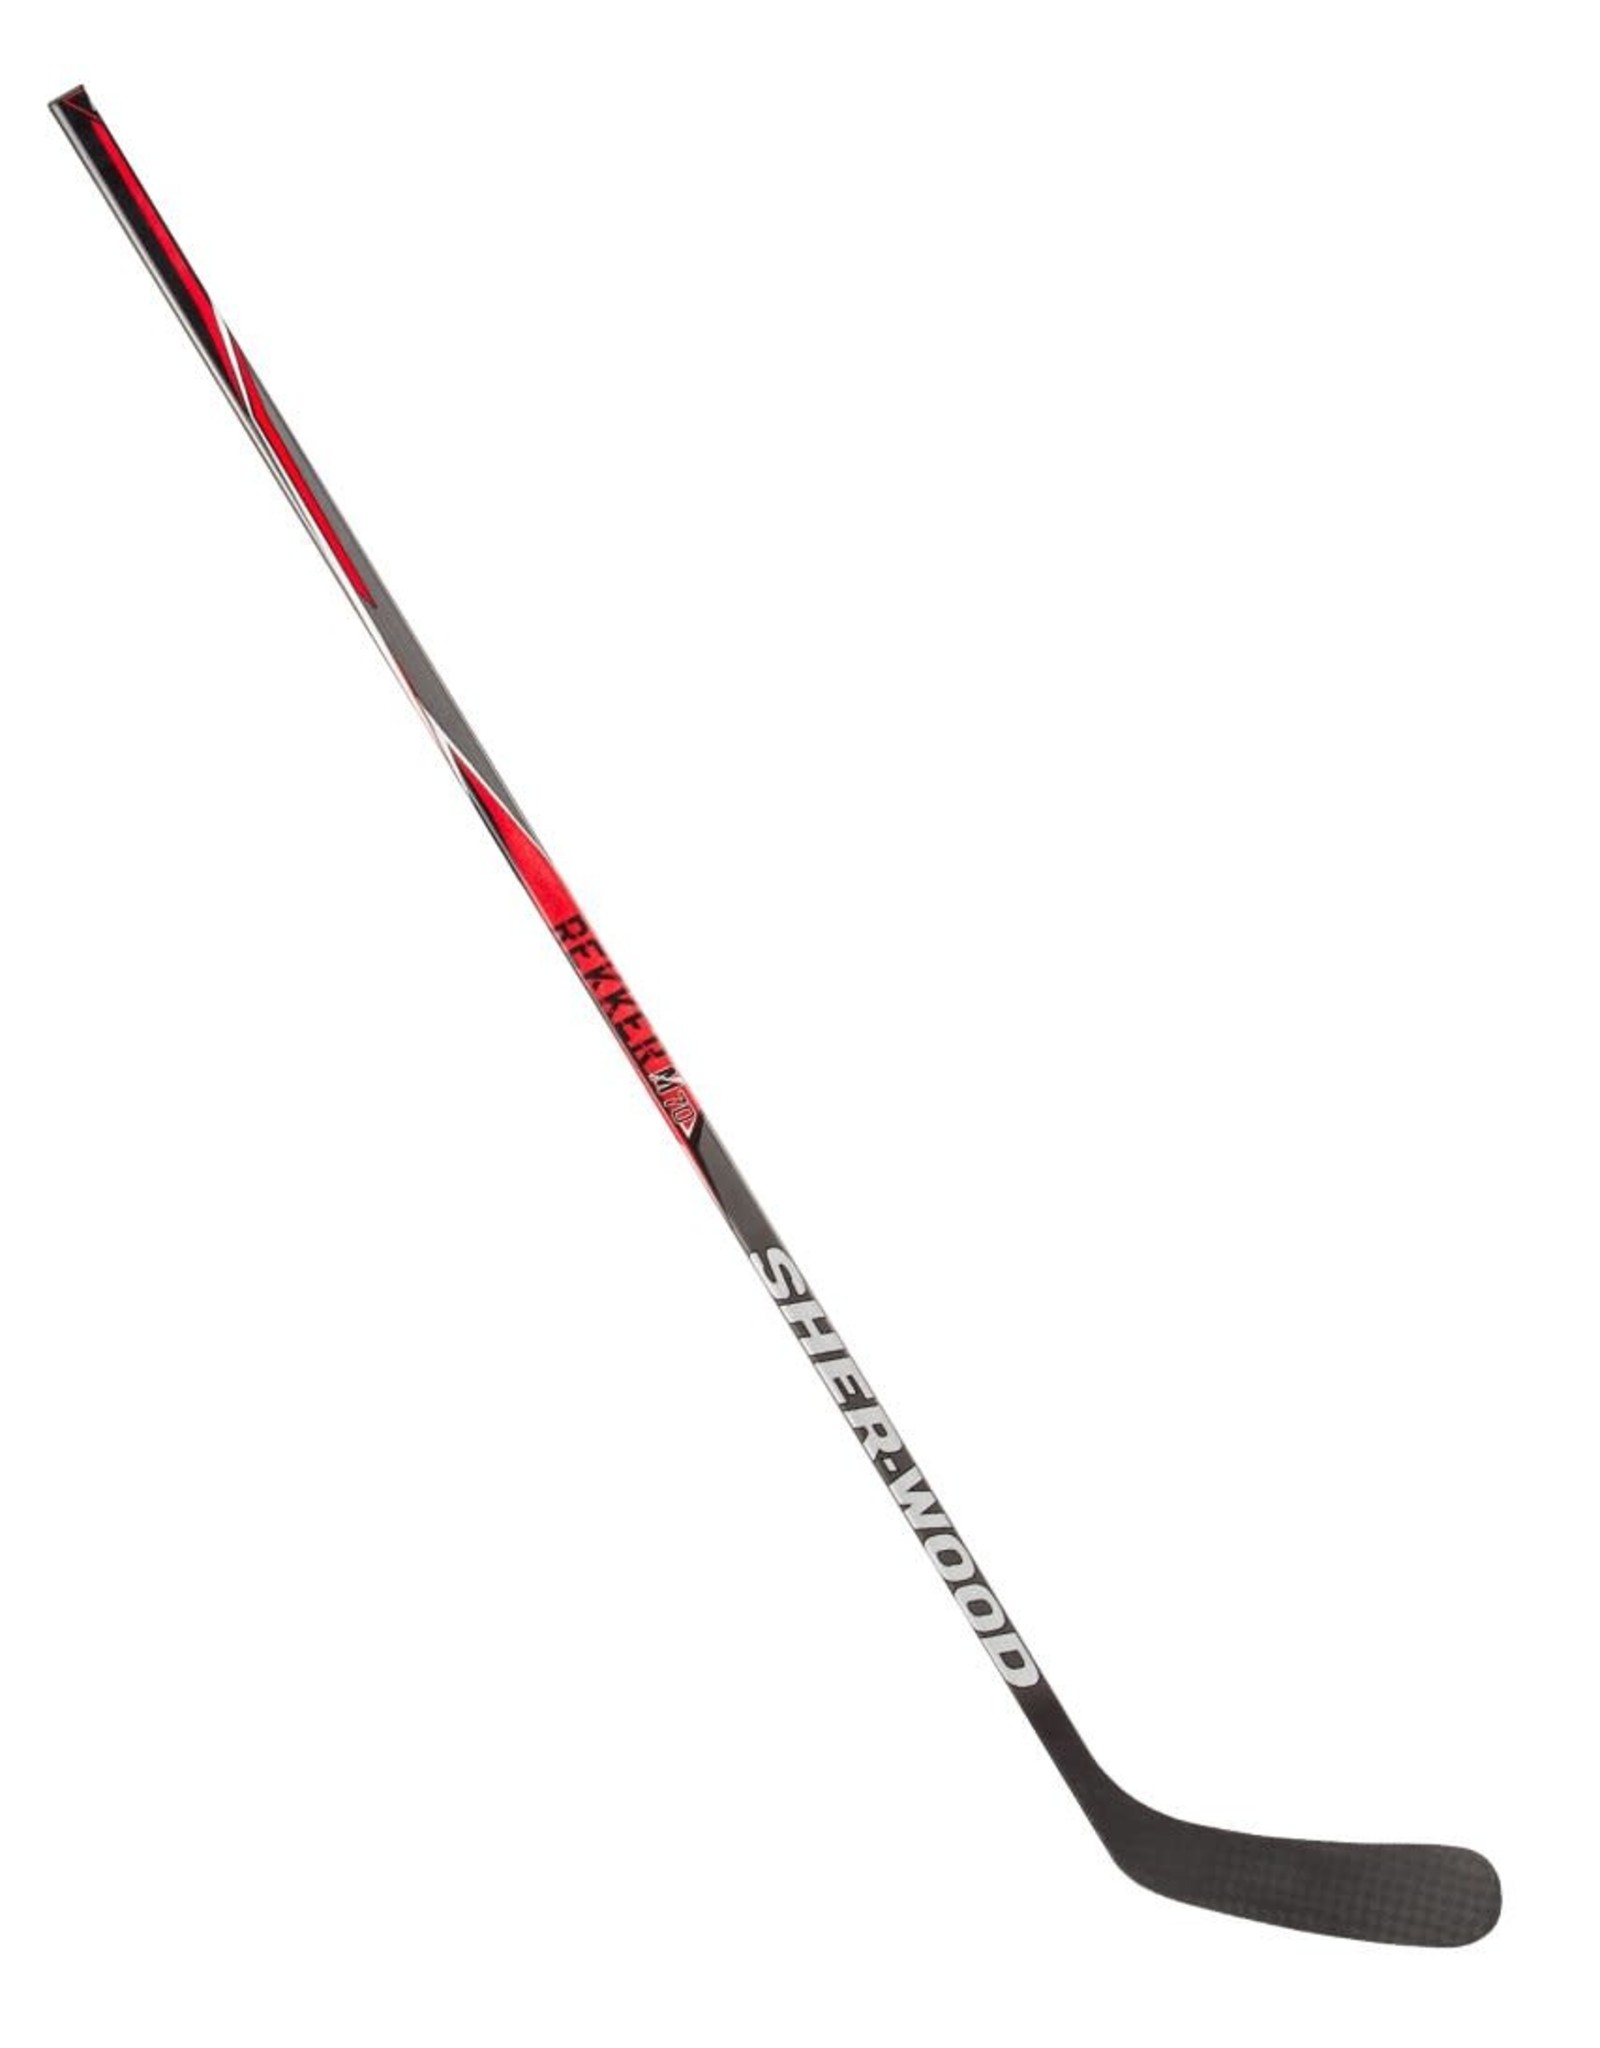 SHER-WOOD Rekker M70 Grip, Senior Hockey Stick